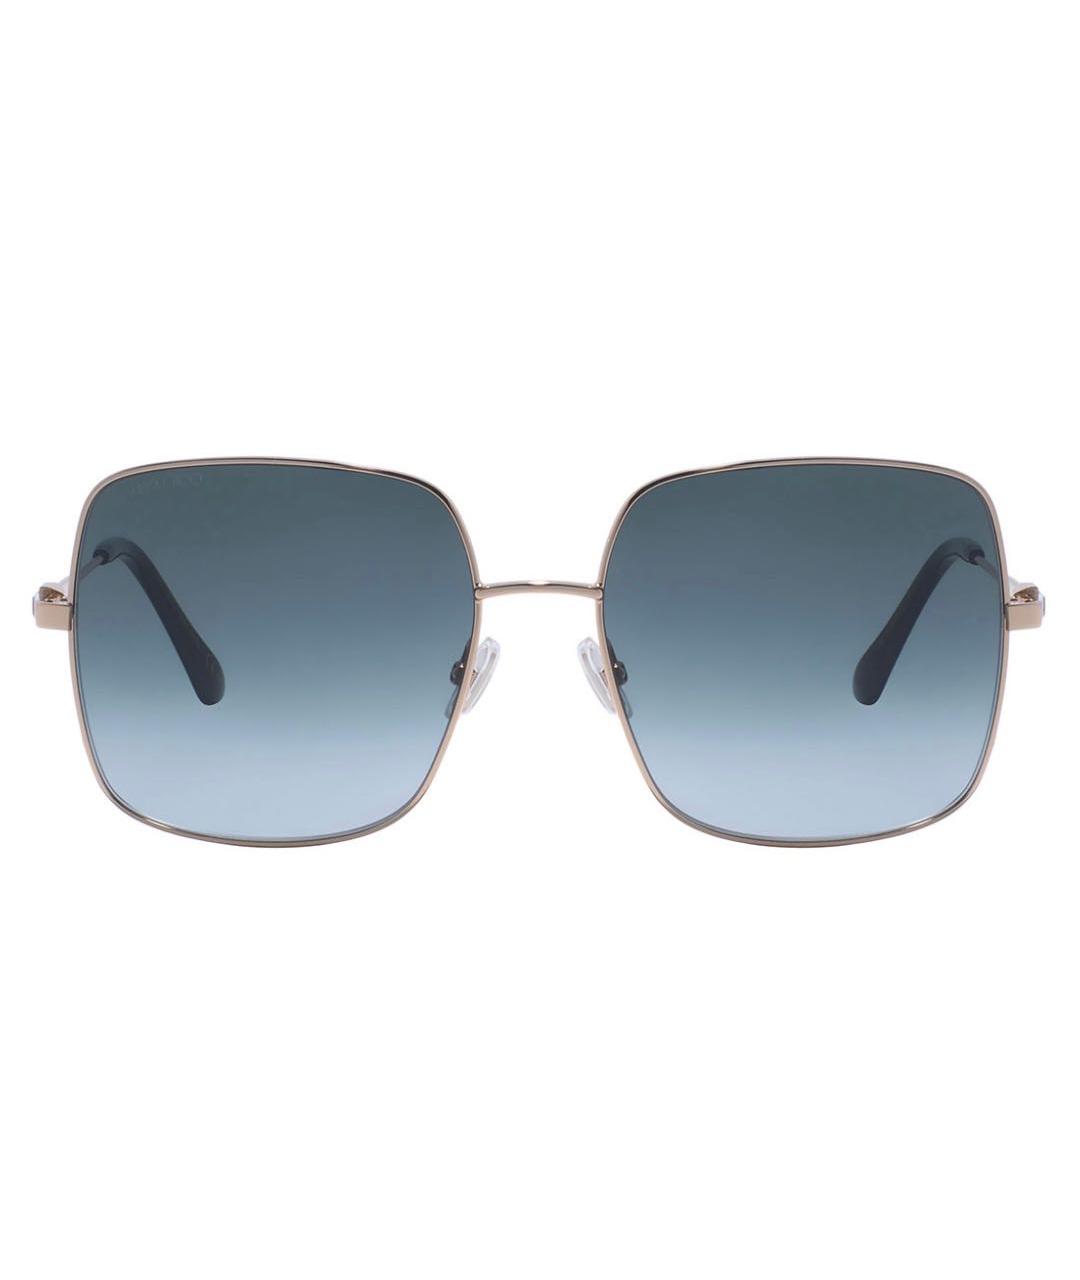 JIMMY CHOO Синие пластиковые солнцезащитные очки, фото 1